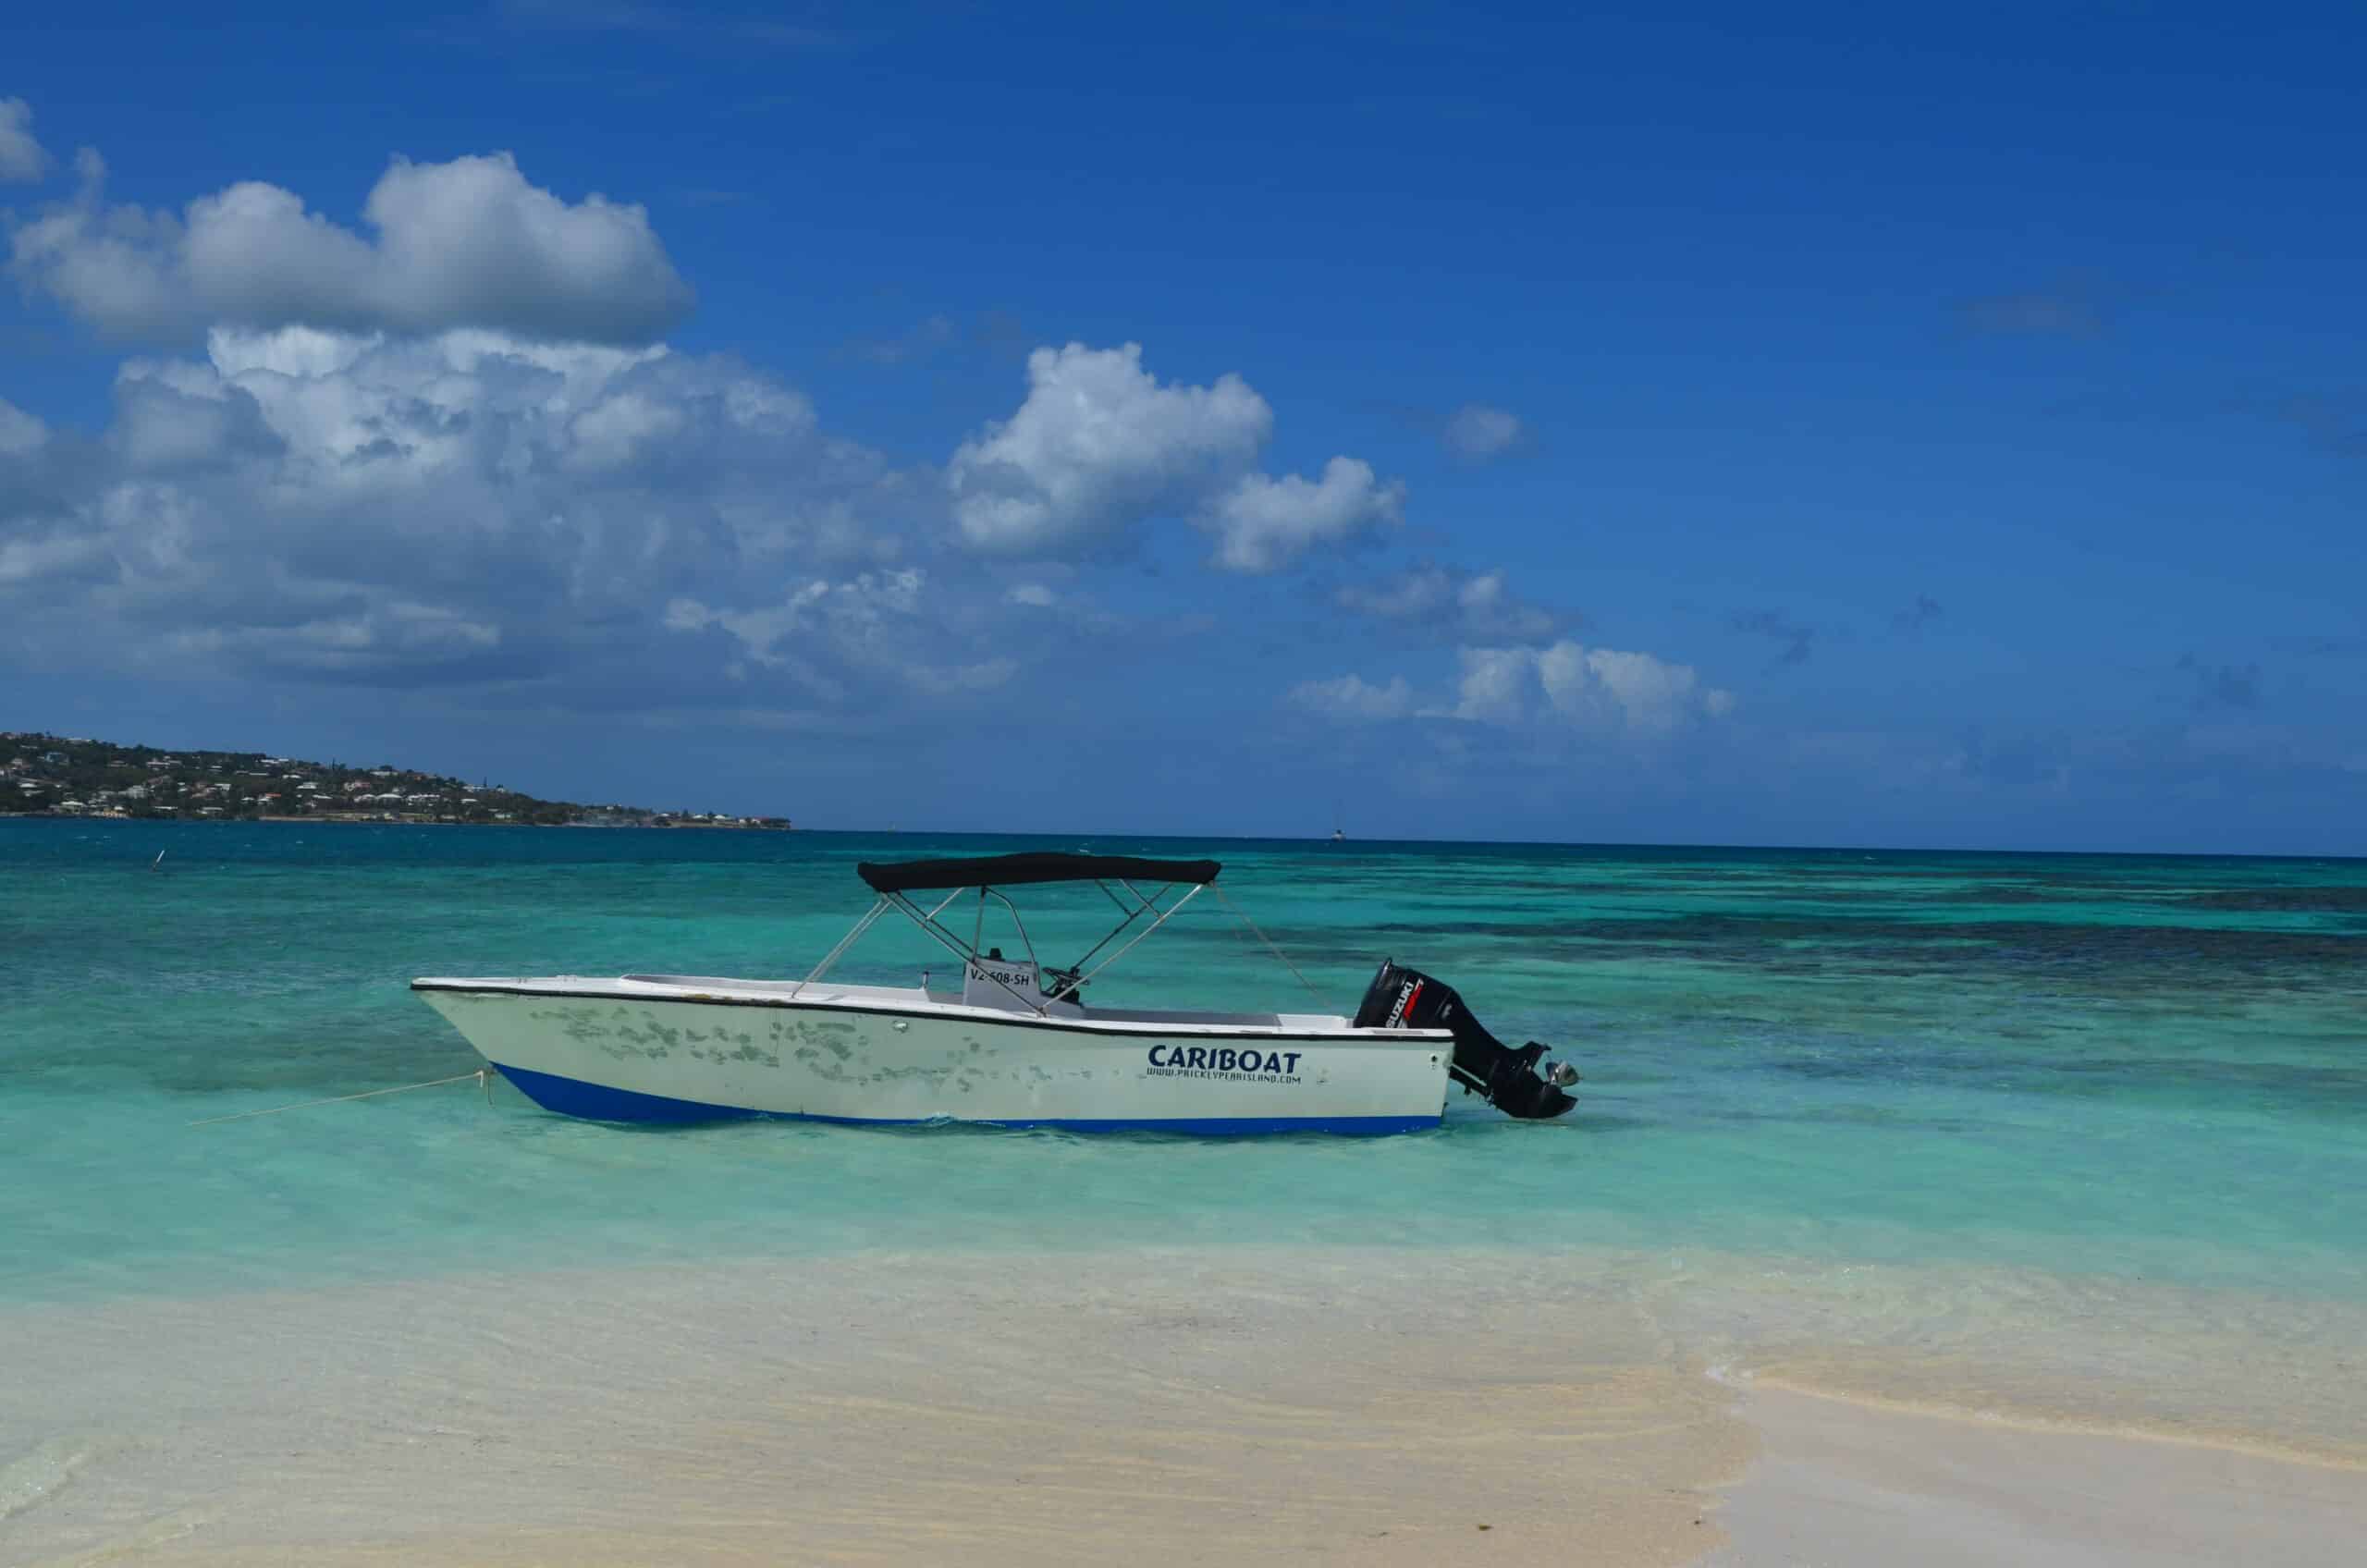 Barco simples, branco, no mar turquesa da Ilha St Martin em dia ensolarado, de céu azulado e com poucas nuvens